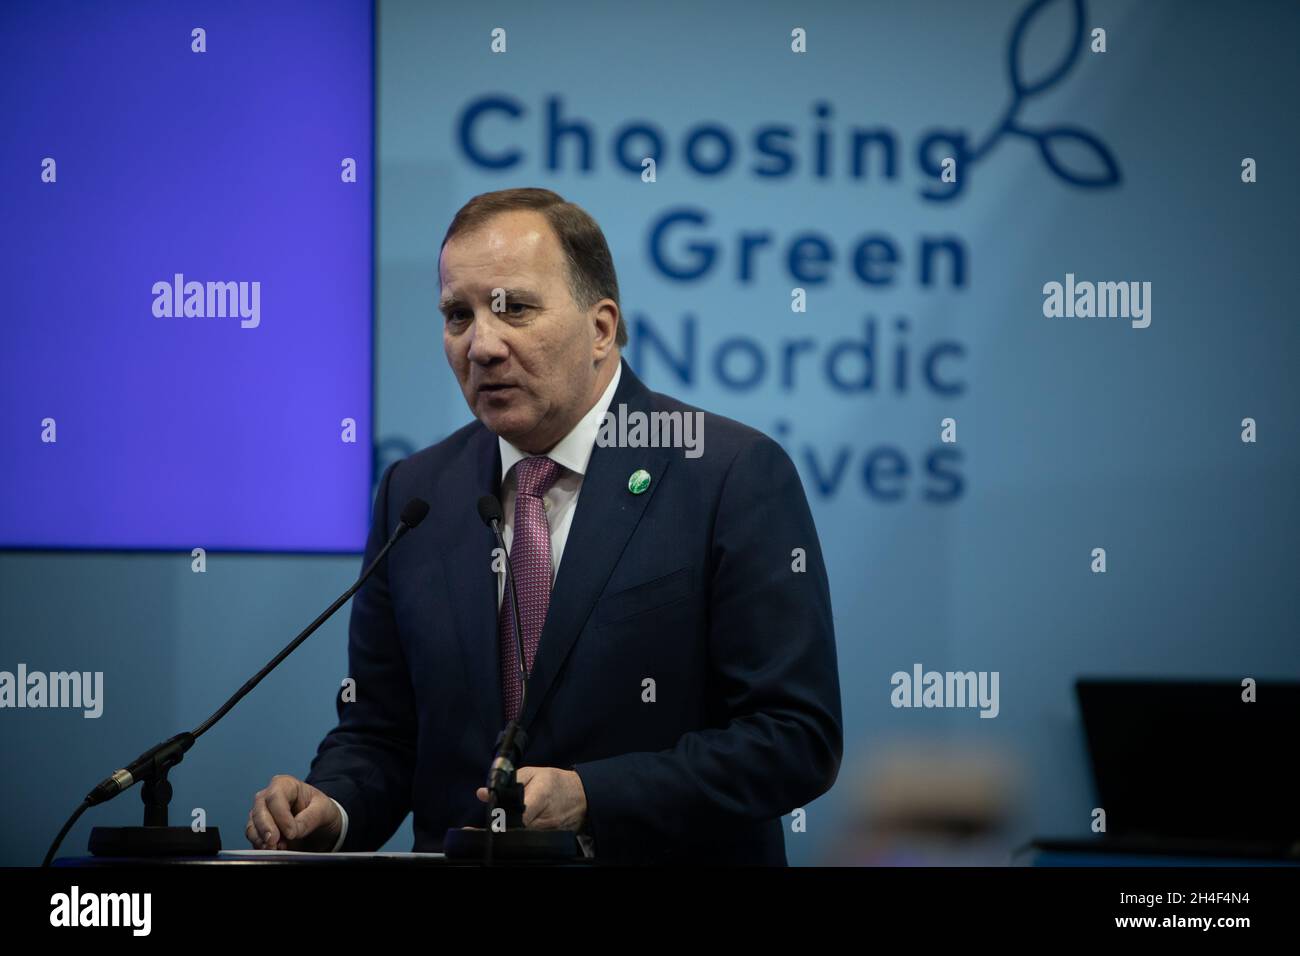 Glasgow, Großbritannien. Stefan Löfven, Ministerpräsident Schwedens, sprach bei einem Treffen der nordischen Länder auf der 26. UN-Klimakonferenz, bekannt als COP26, am 2. November 2021 in Glasgow, Schottland. Foto: Jeremy Sutton-Hibbert/Alamy Live News, Stockfoto